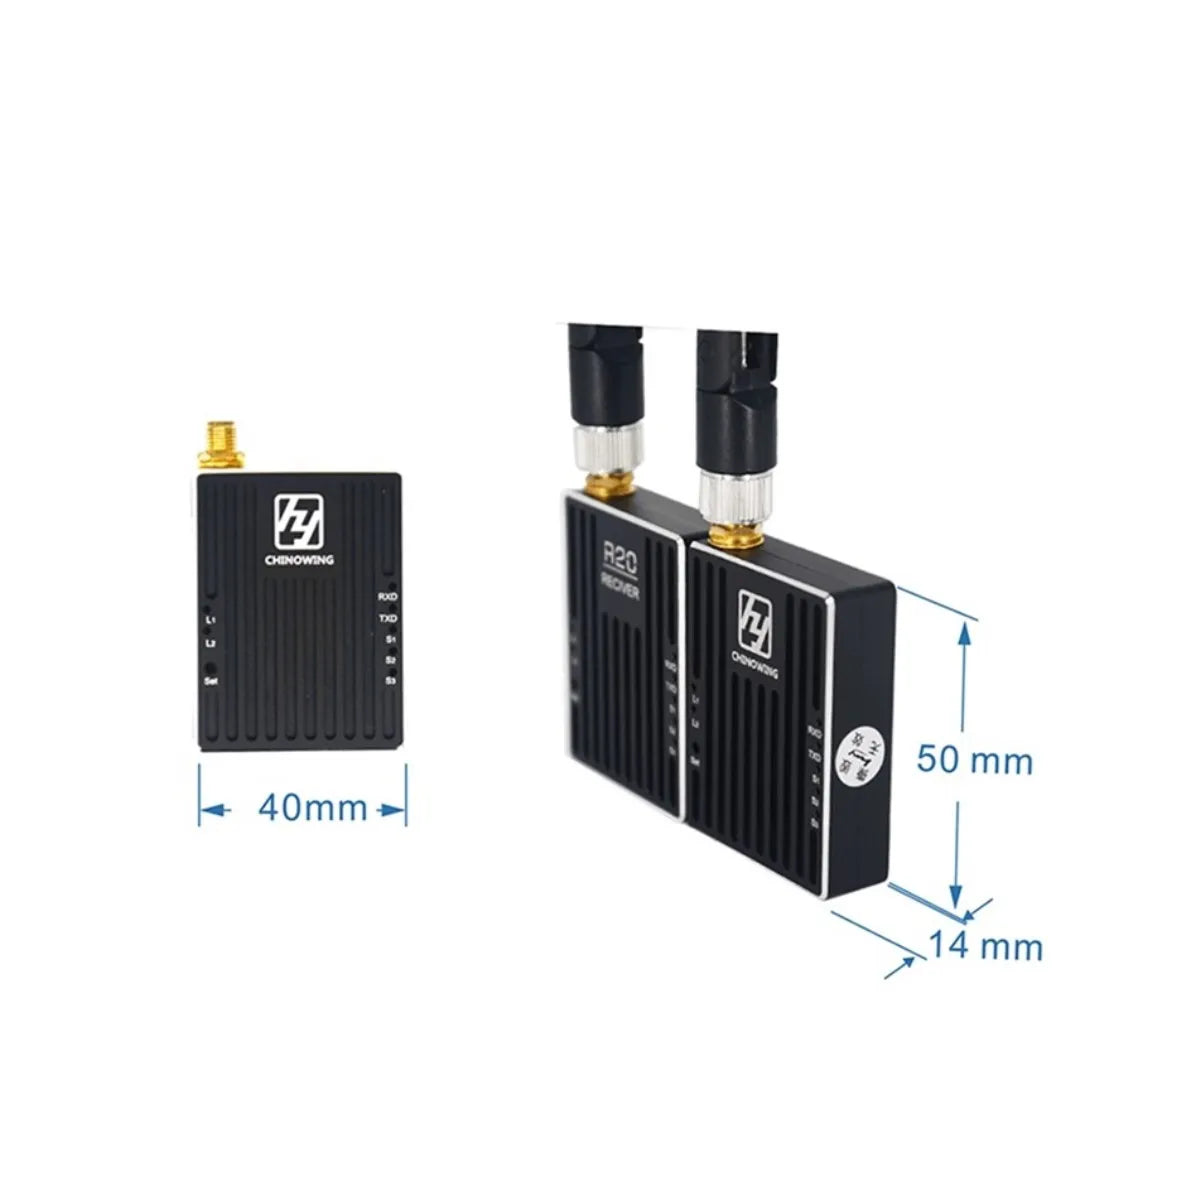 R20 820-845Mhz 100mw-1W VTX, R20 820-845Mhz 100mw-1W adjustable wireless data link 